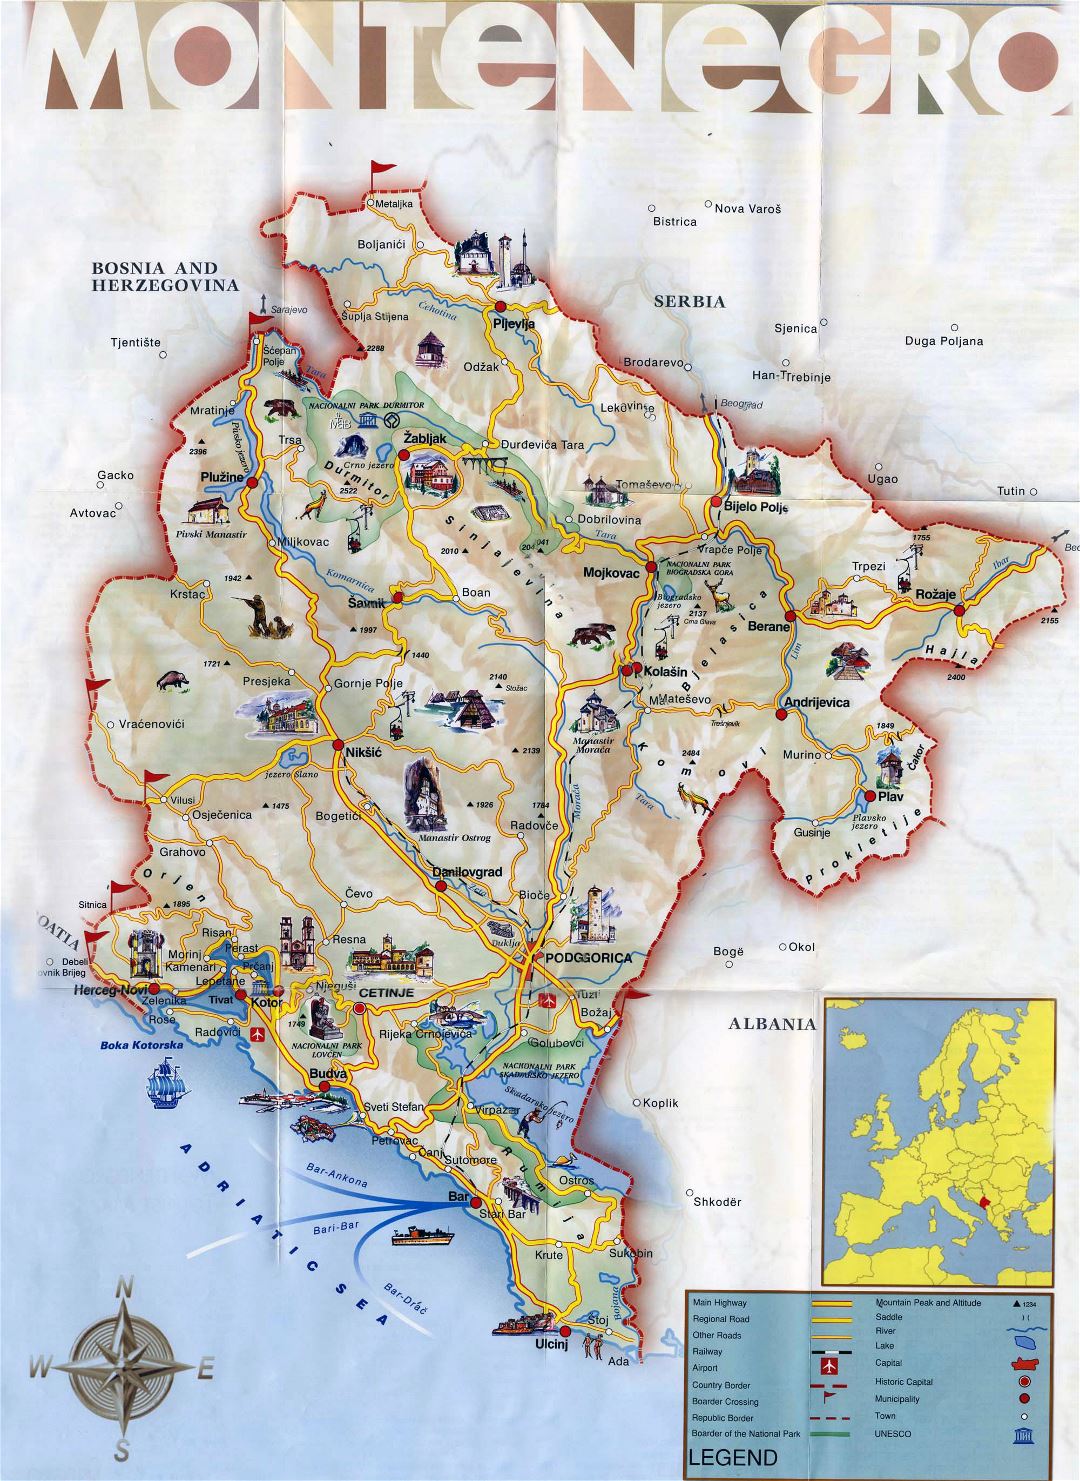 Grande detallado mapa turística de Montenegro con carreteras